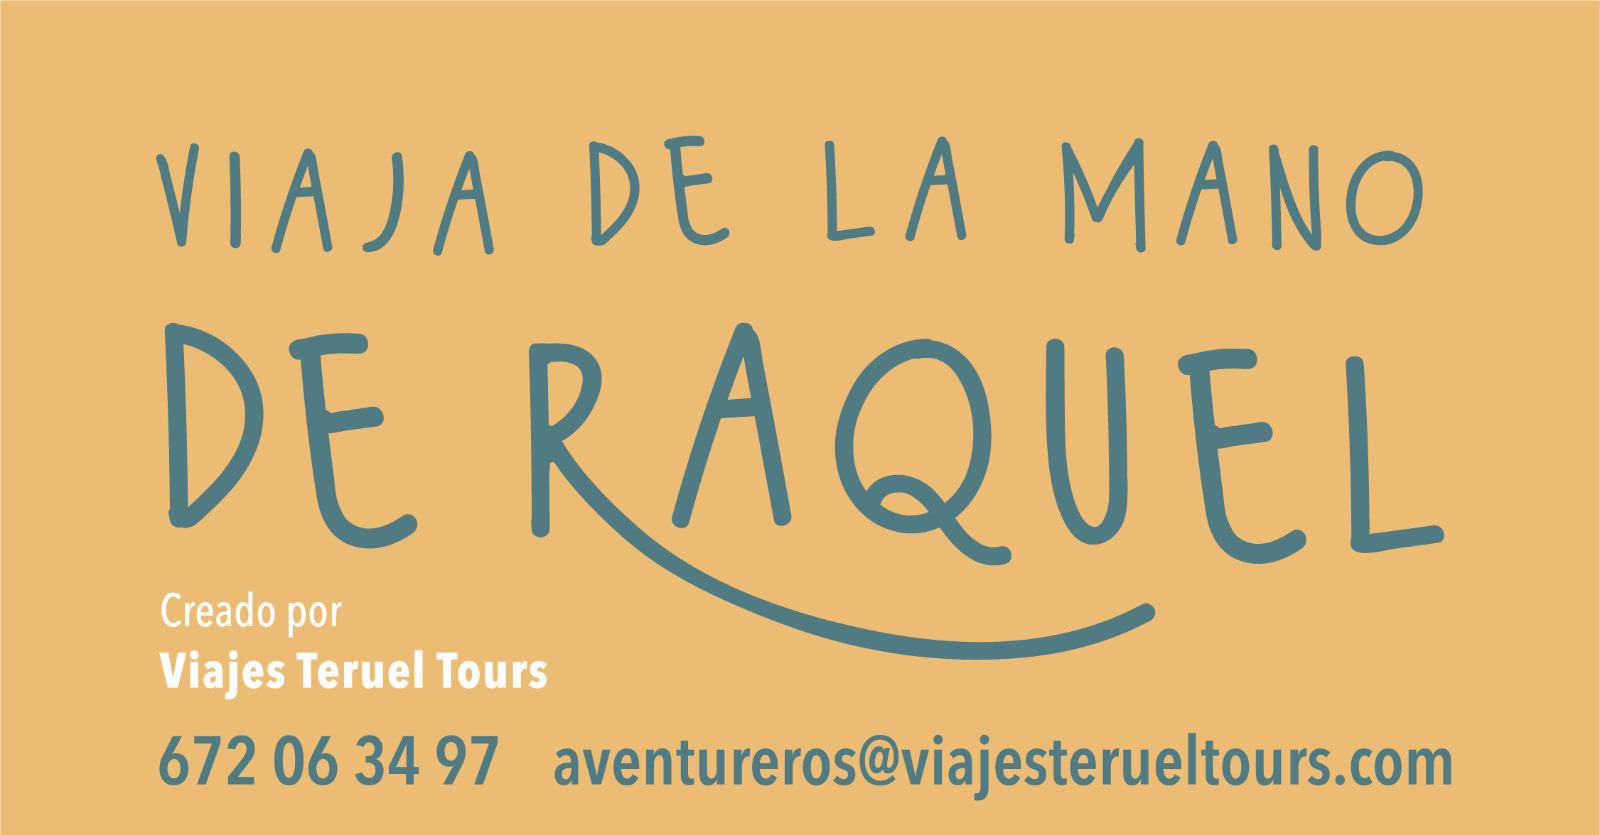 Images Viajes Teruel Tours